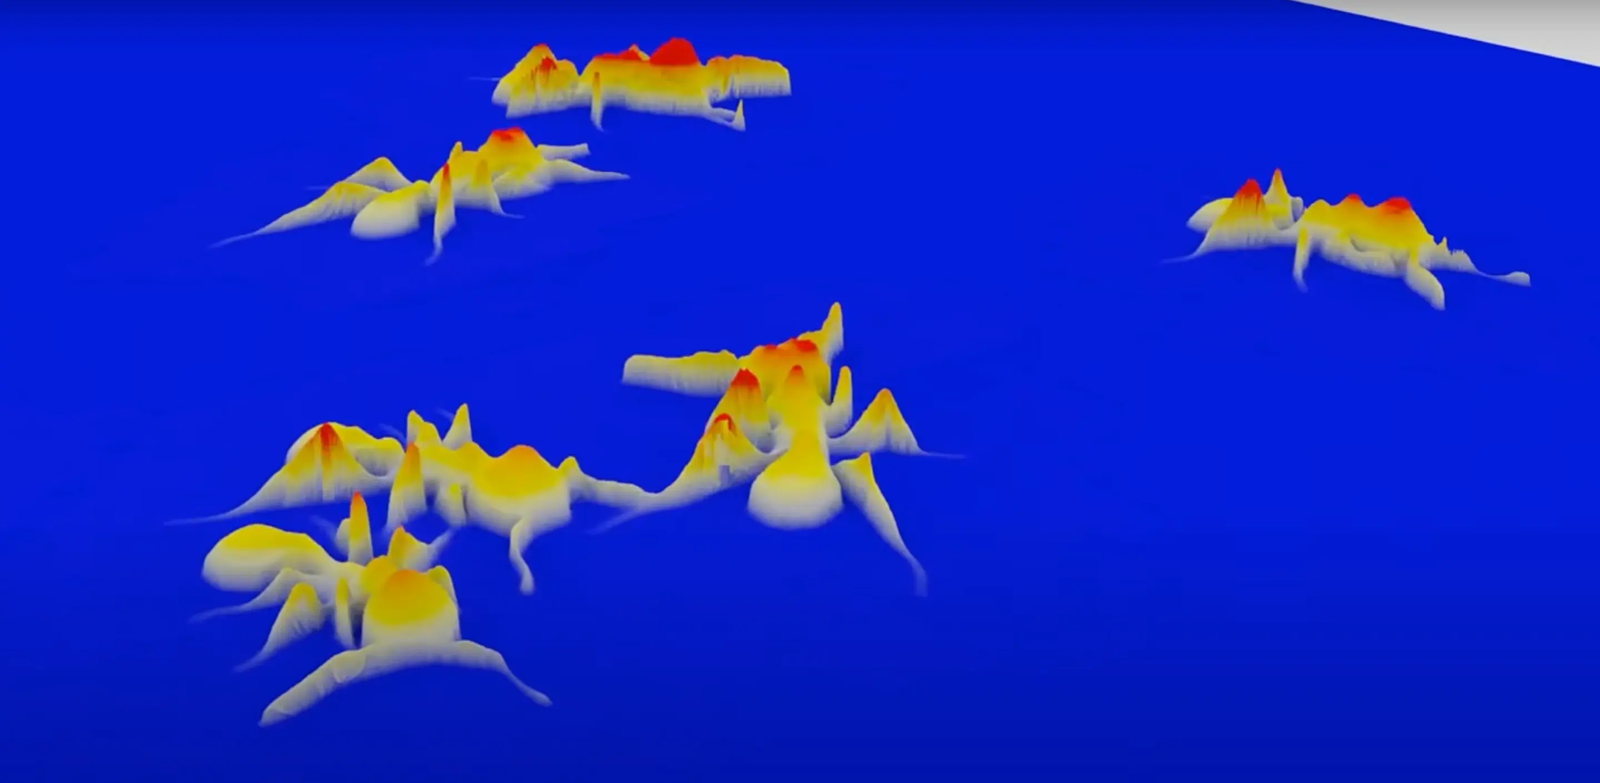 Le MCAM permet de capturer sur une grande surface des vidéos en 3D d’insectes avec une résolution inégalée. © Duke